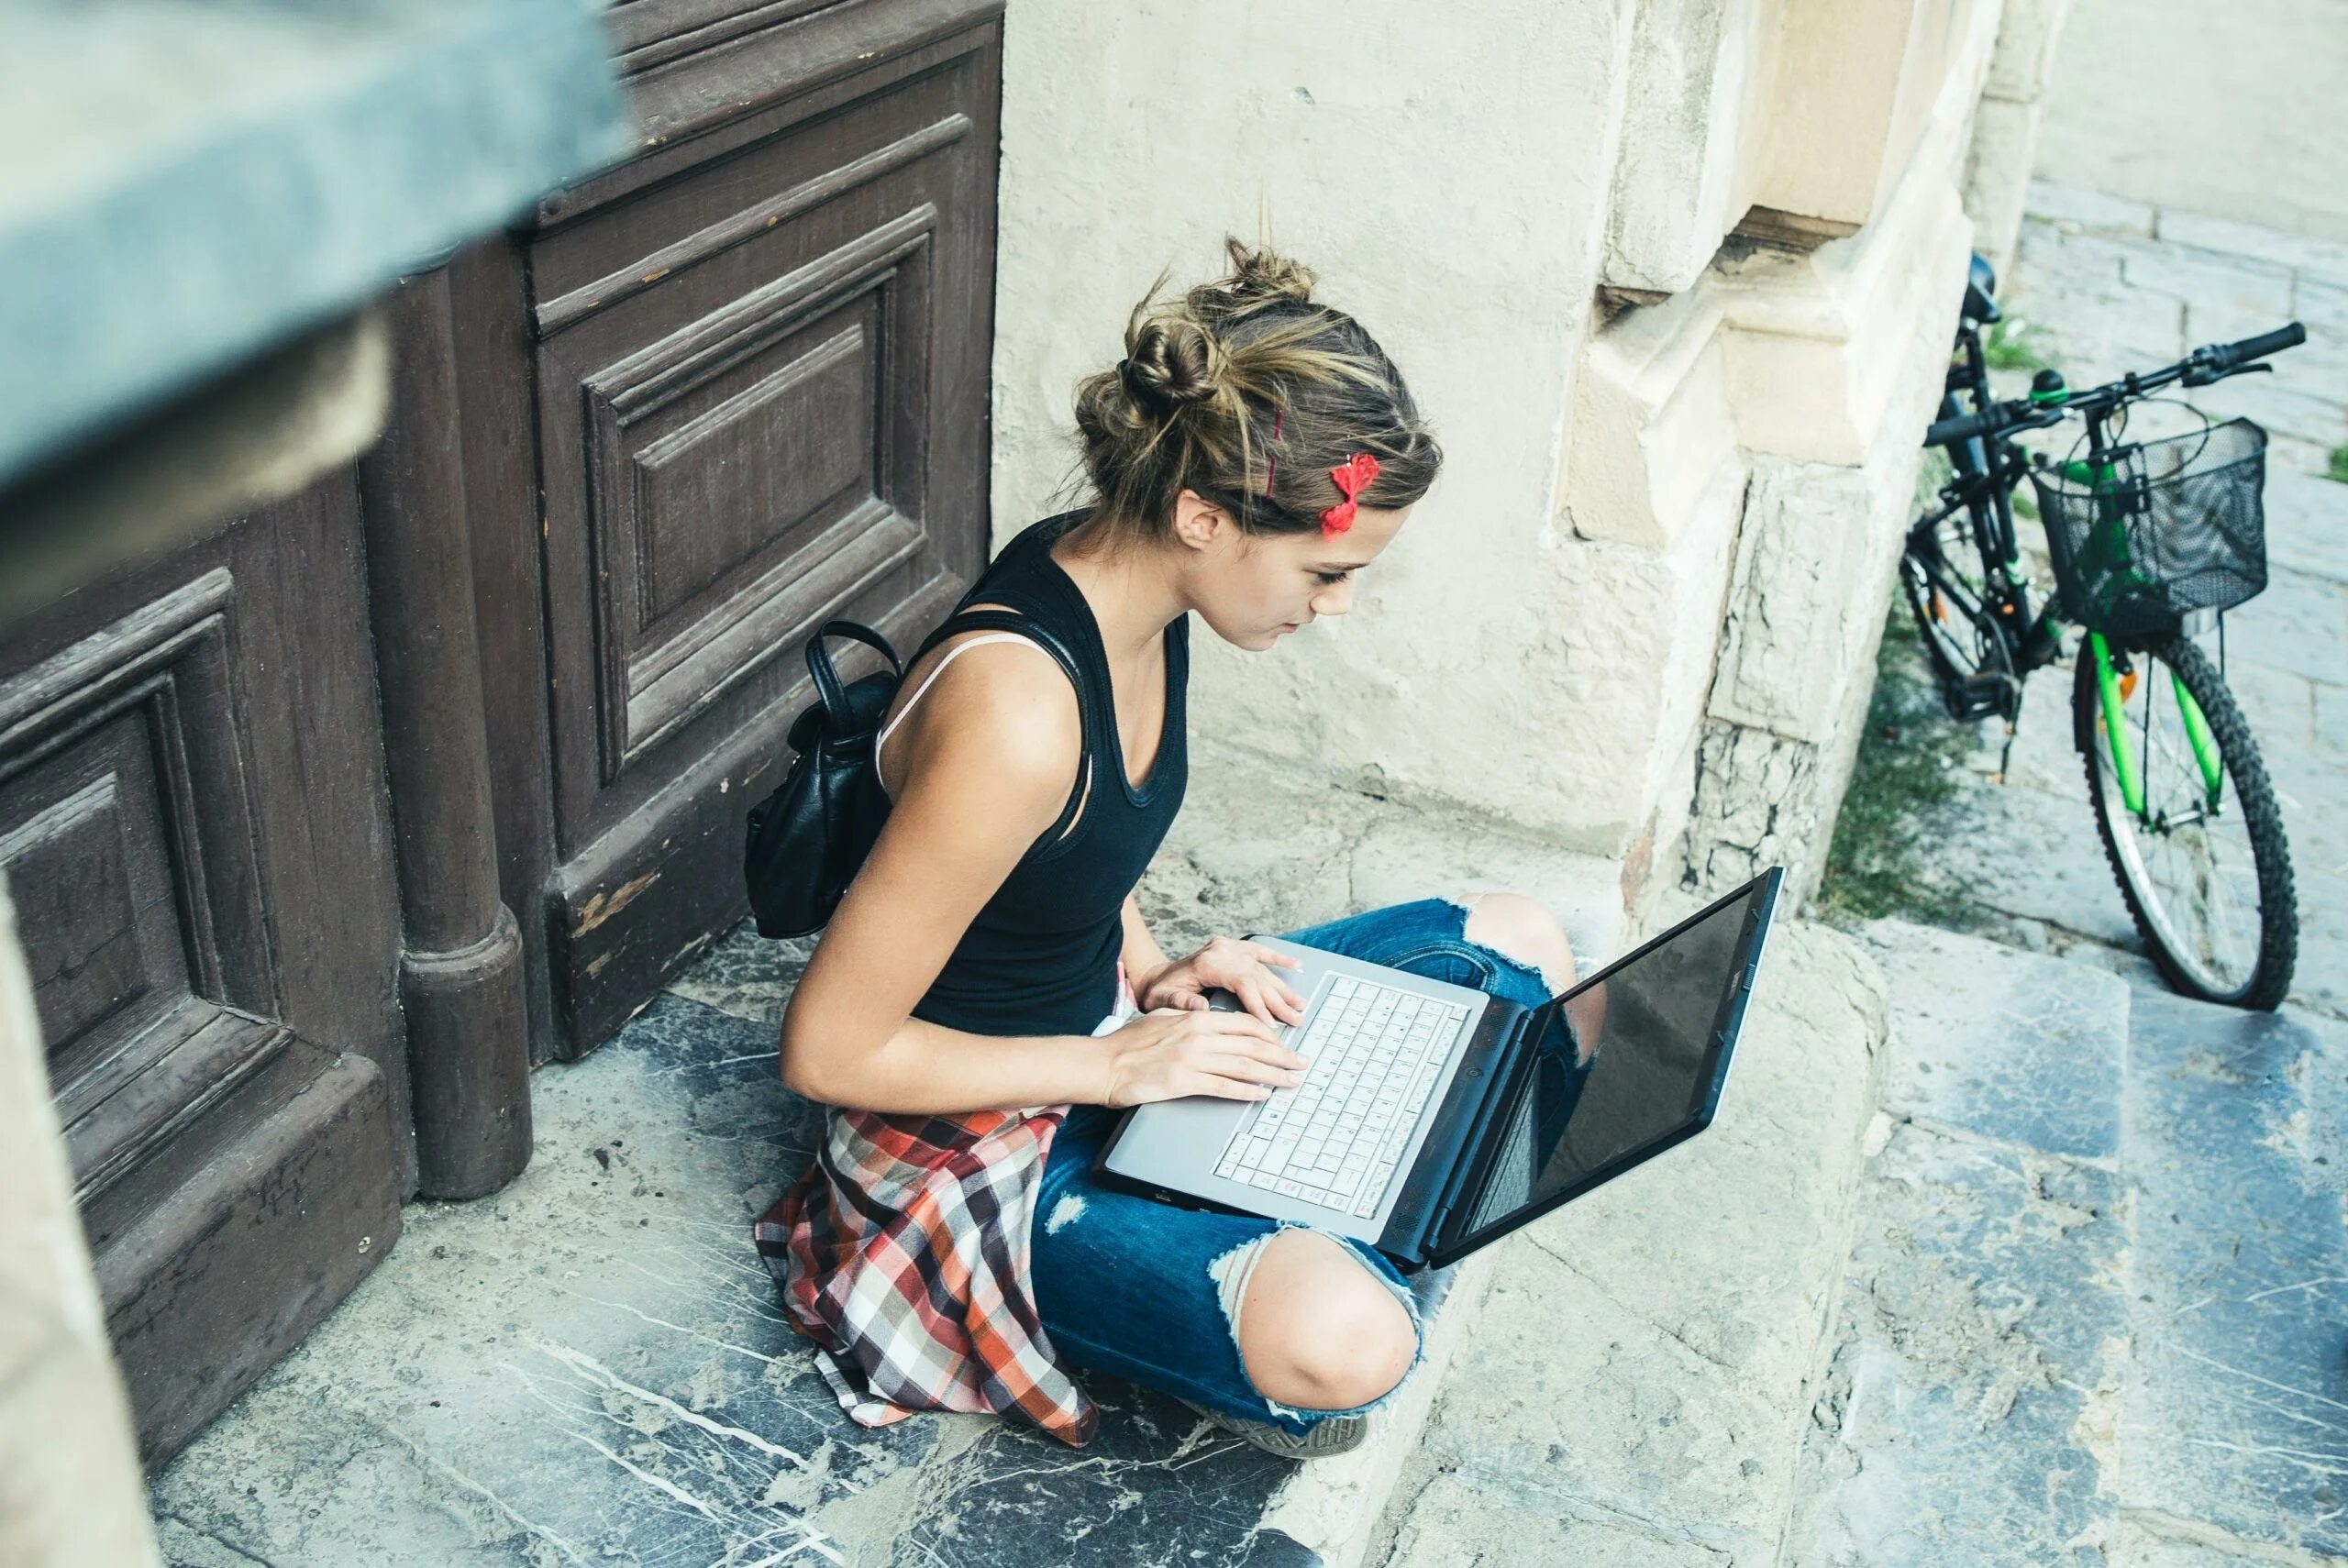 Travel writer. Девушка с ноутом. Девушка с ноутбуком. Девушка путешествует с ноутбуком. Девушка с ноутбуком в руках.